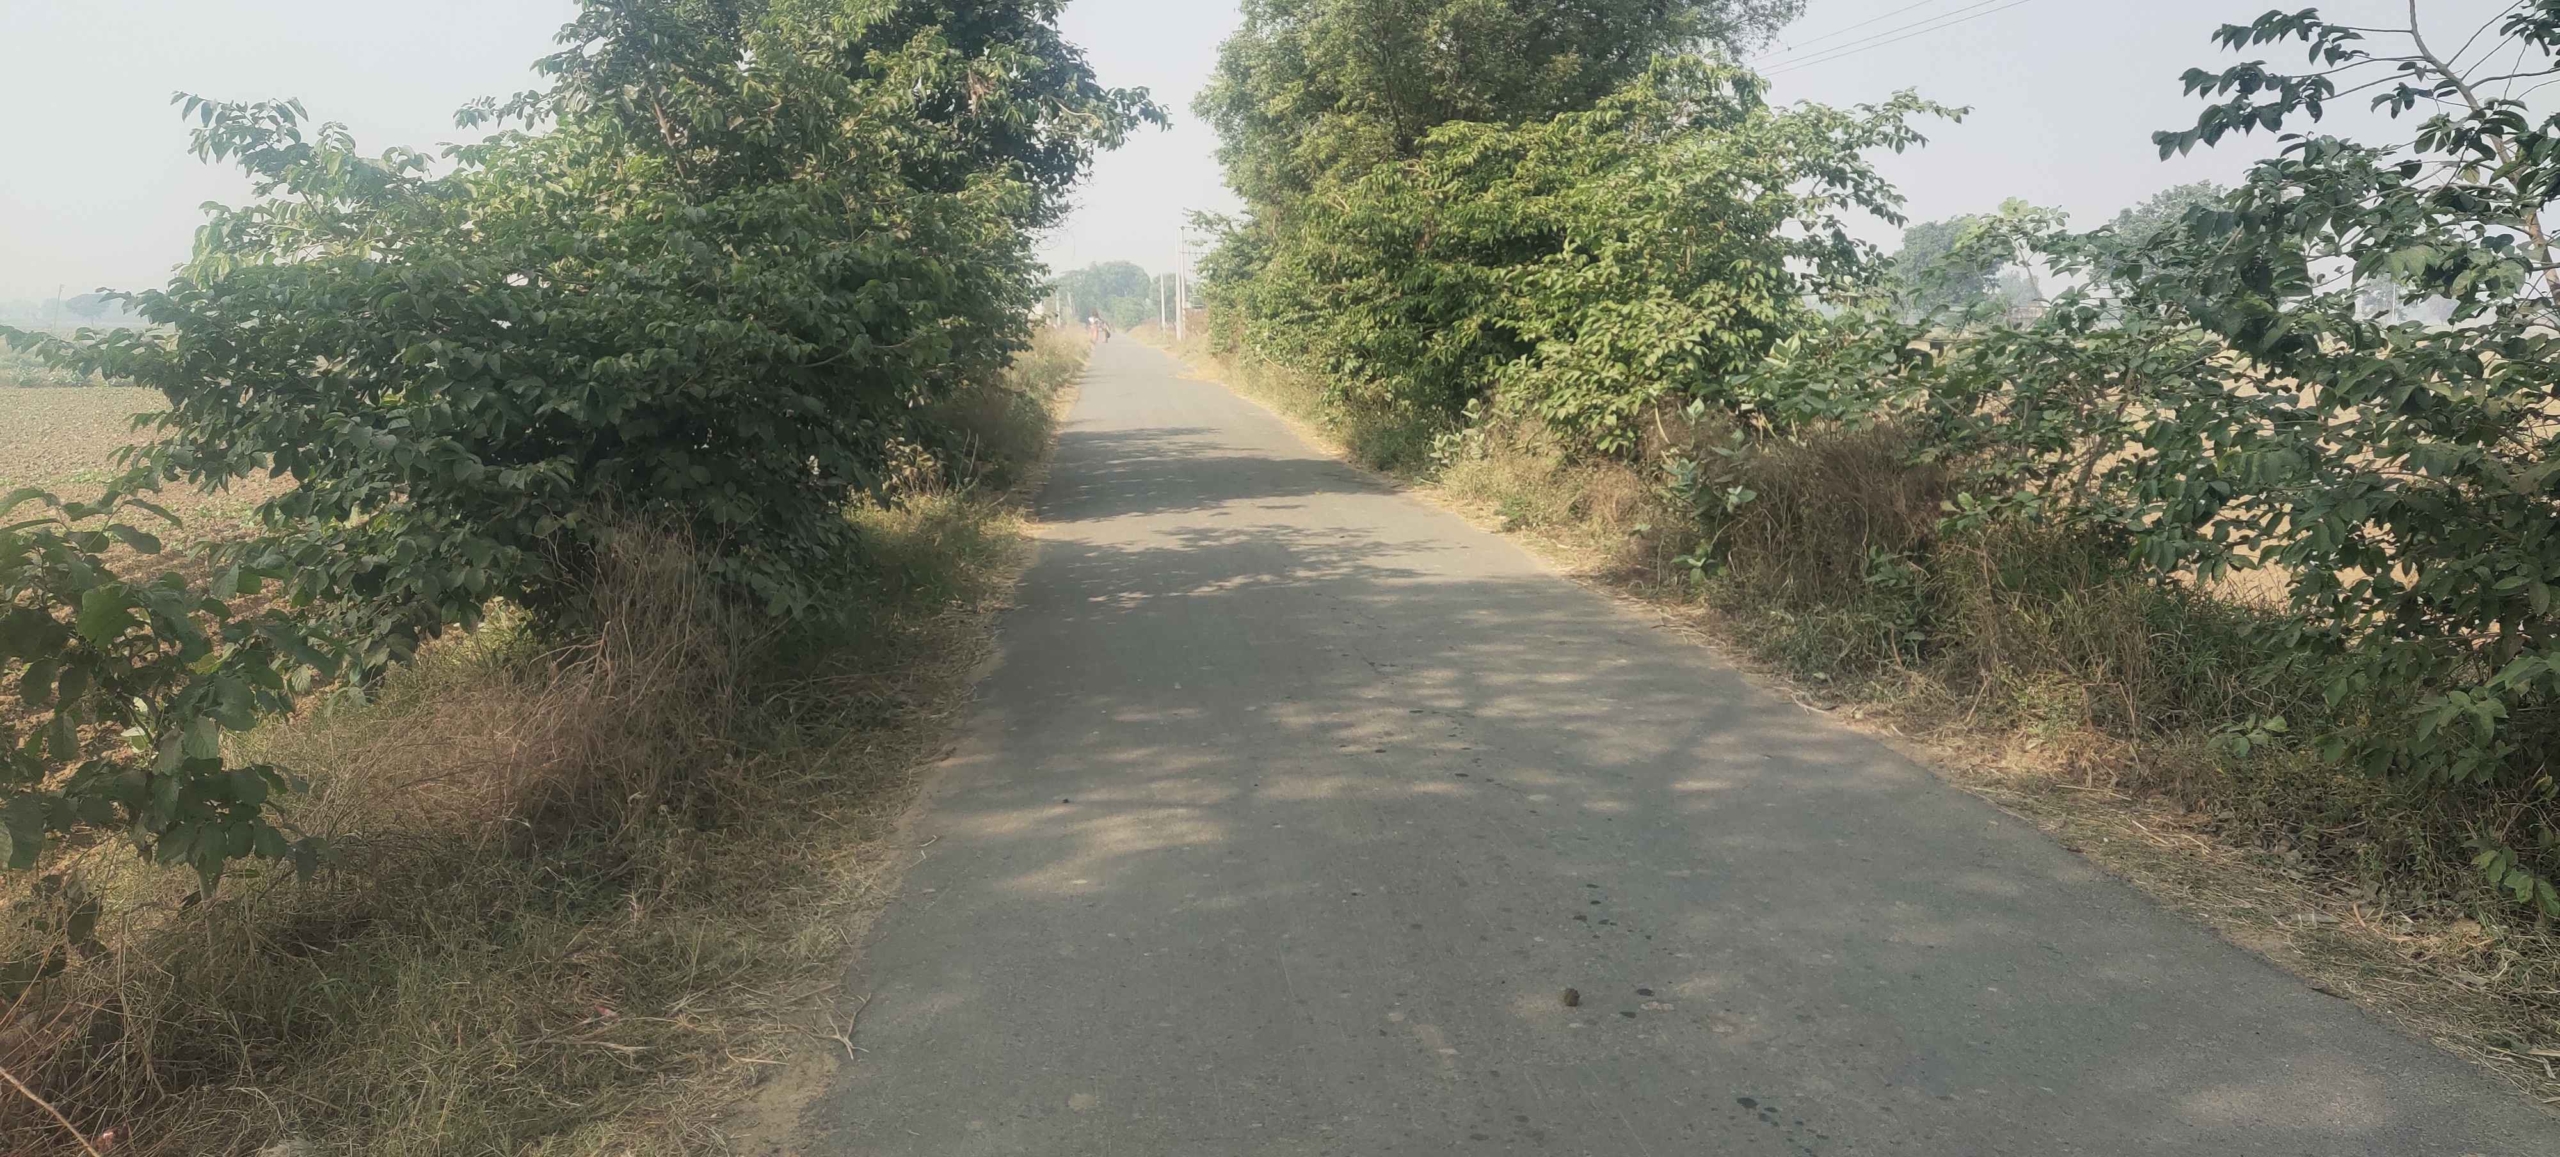 Cheap Agricultural Land For Sale In Haryana Near Gurawara Rewari Jhajjar Highway